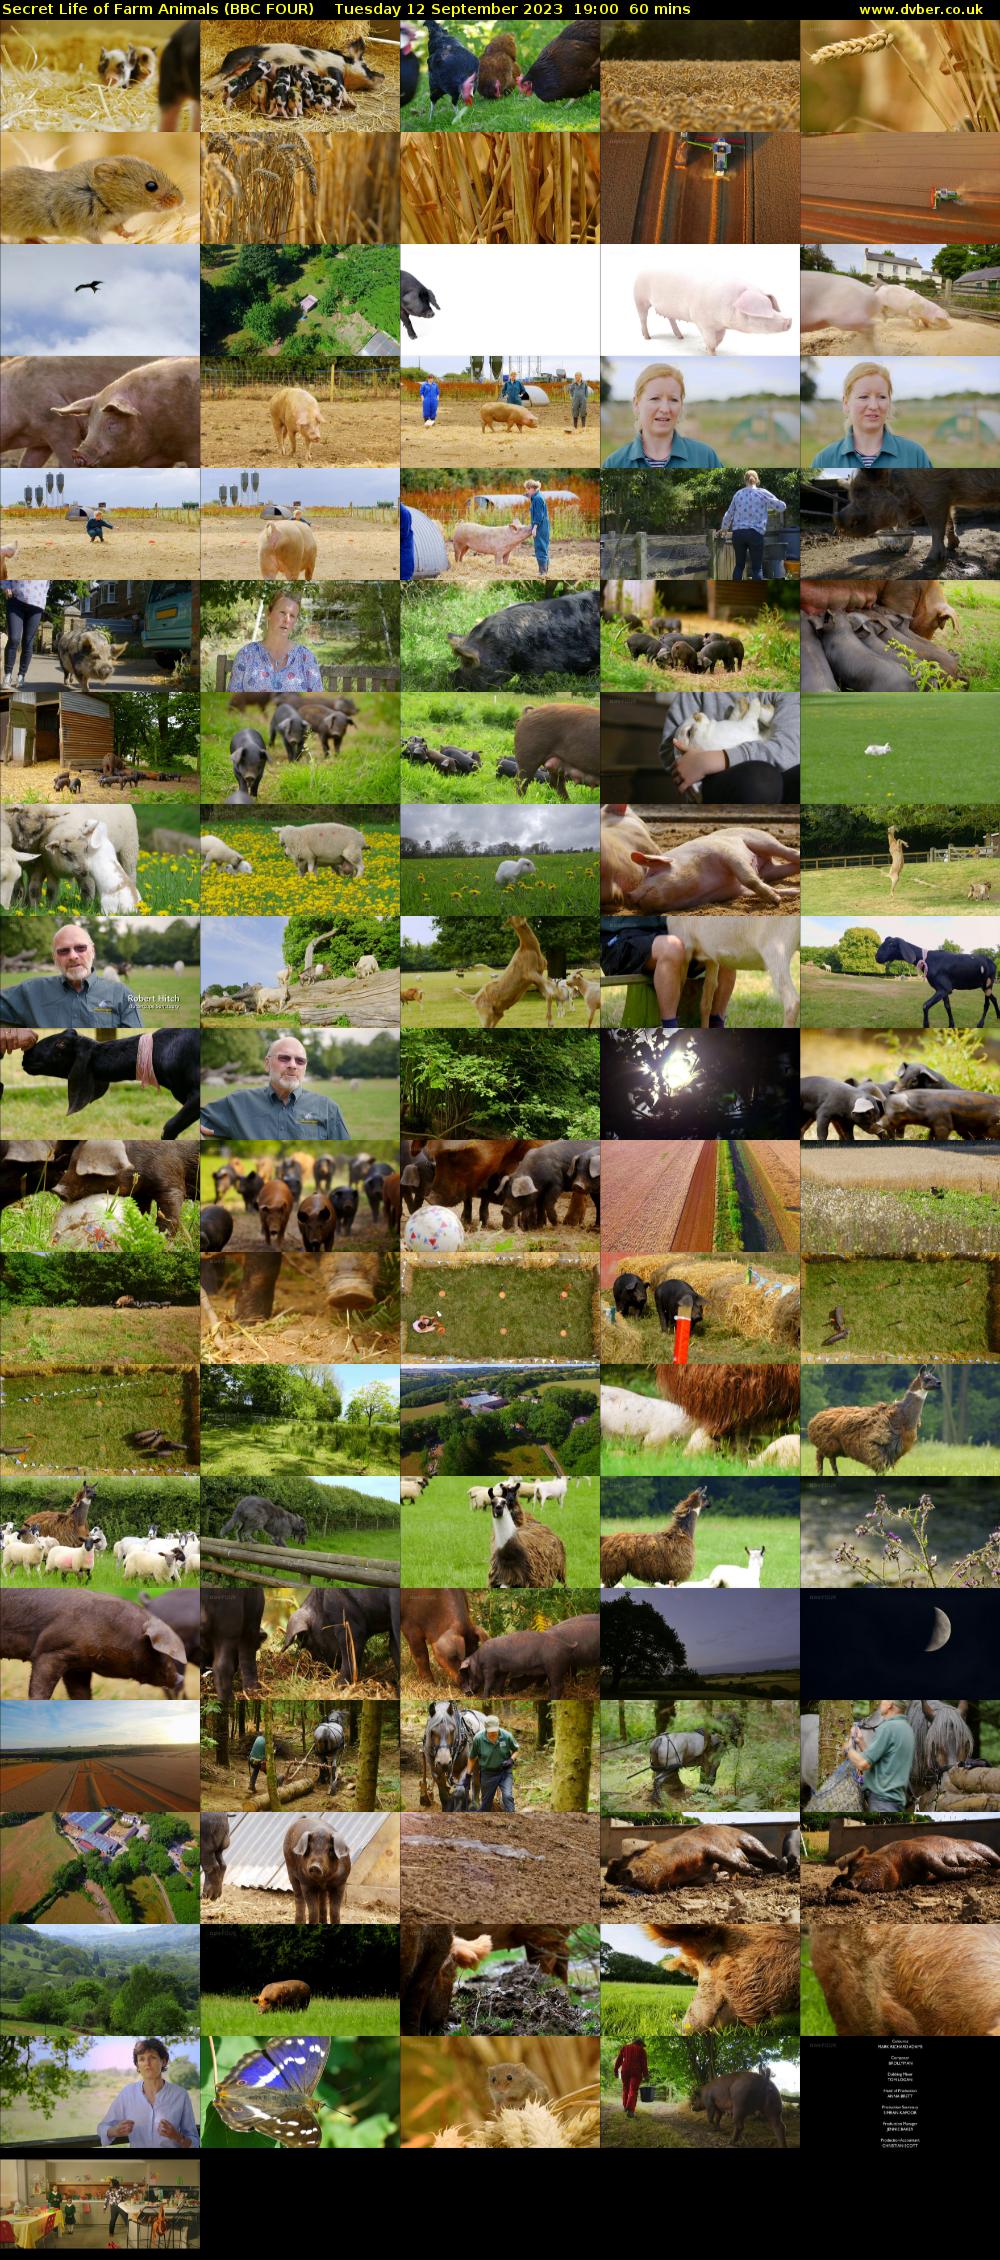 Secret Life of Farm Animals (BBC FOUR) Tuesday 12 September 2023 19:00 - 20:00